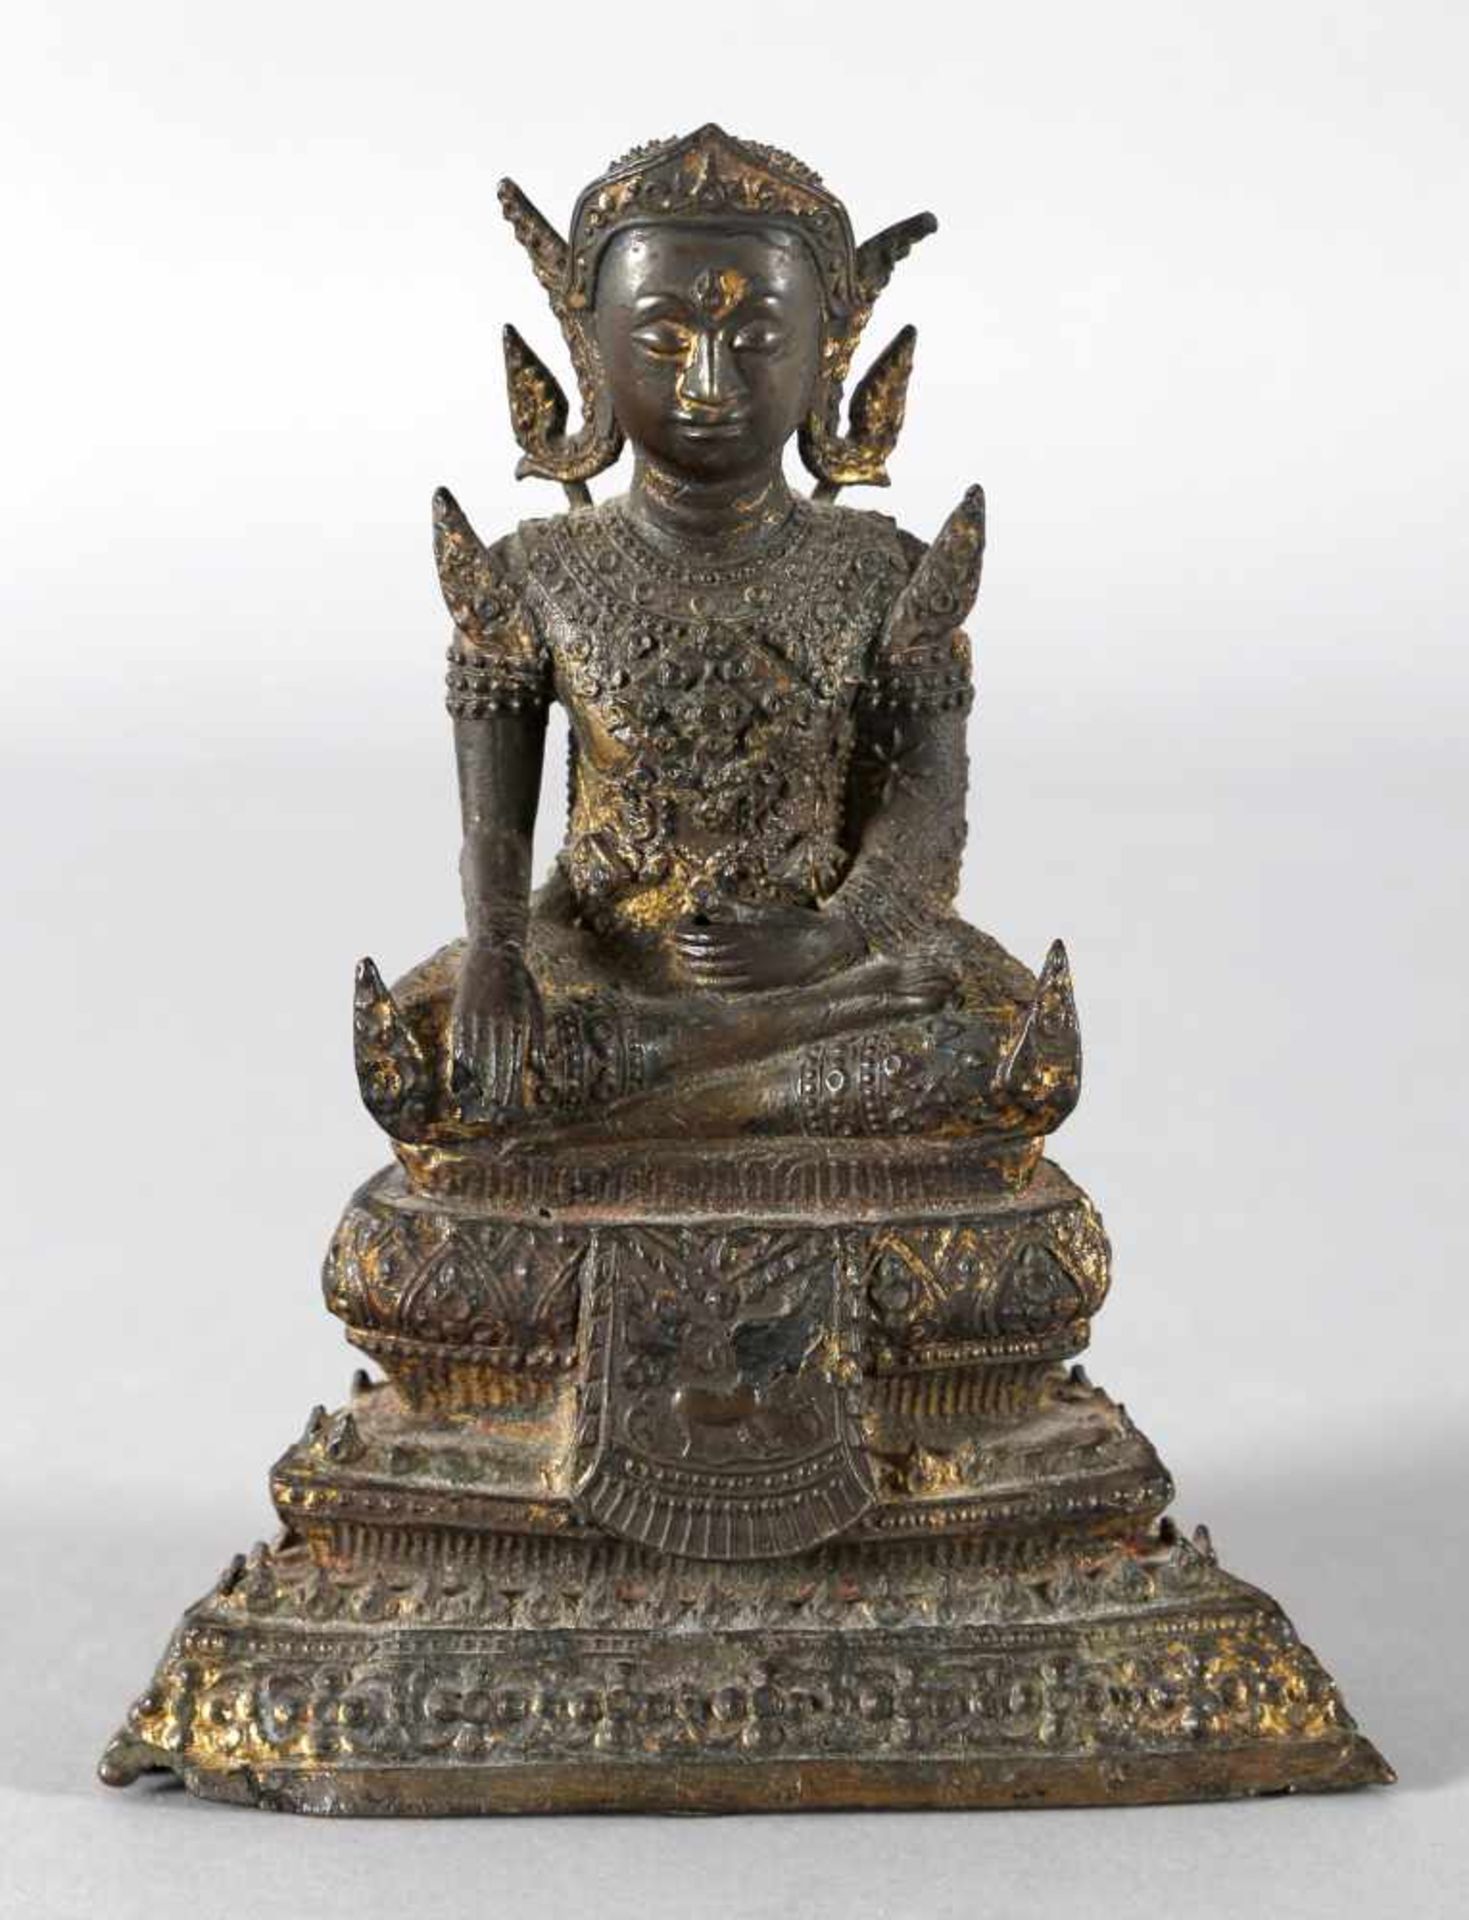 Buddha, Südostasien, wohl ThailandBronze vergoldet (Reste davon), im Meditationssitz, die rechte